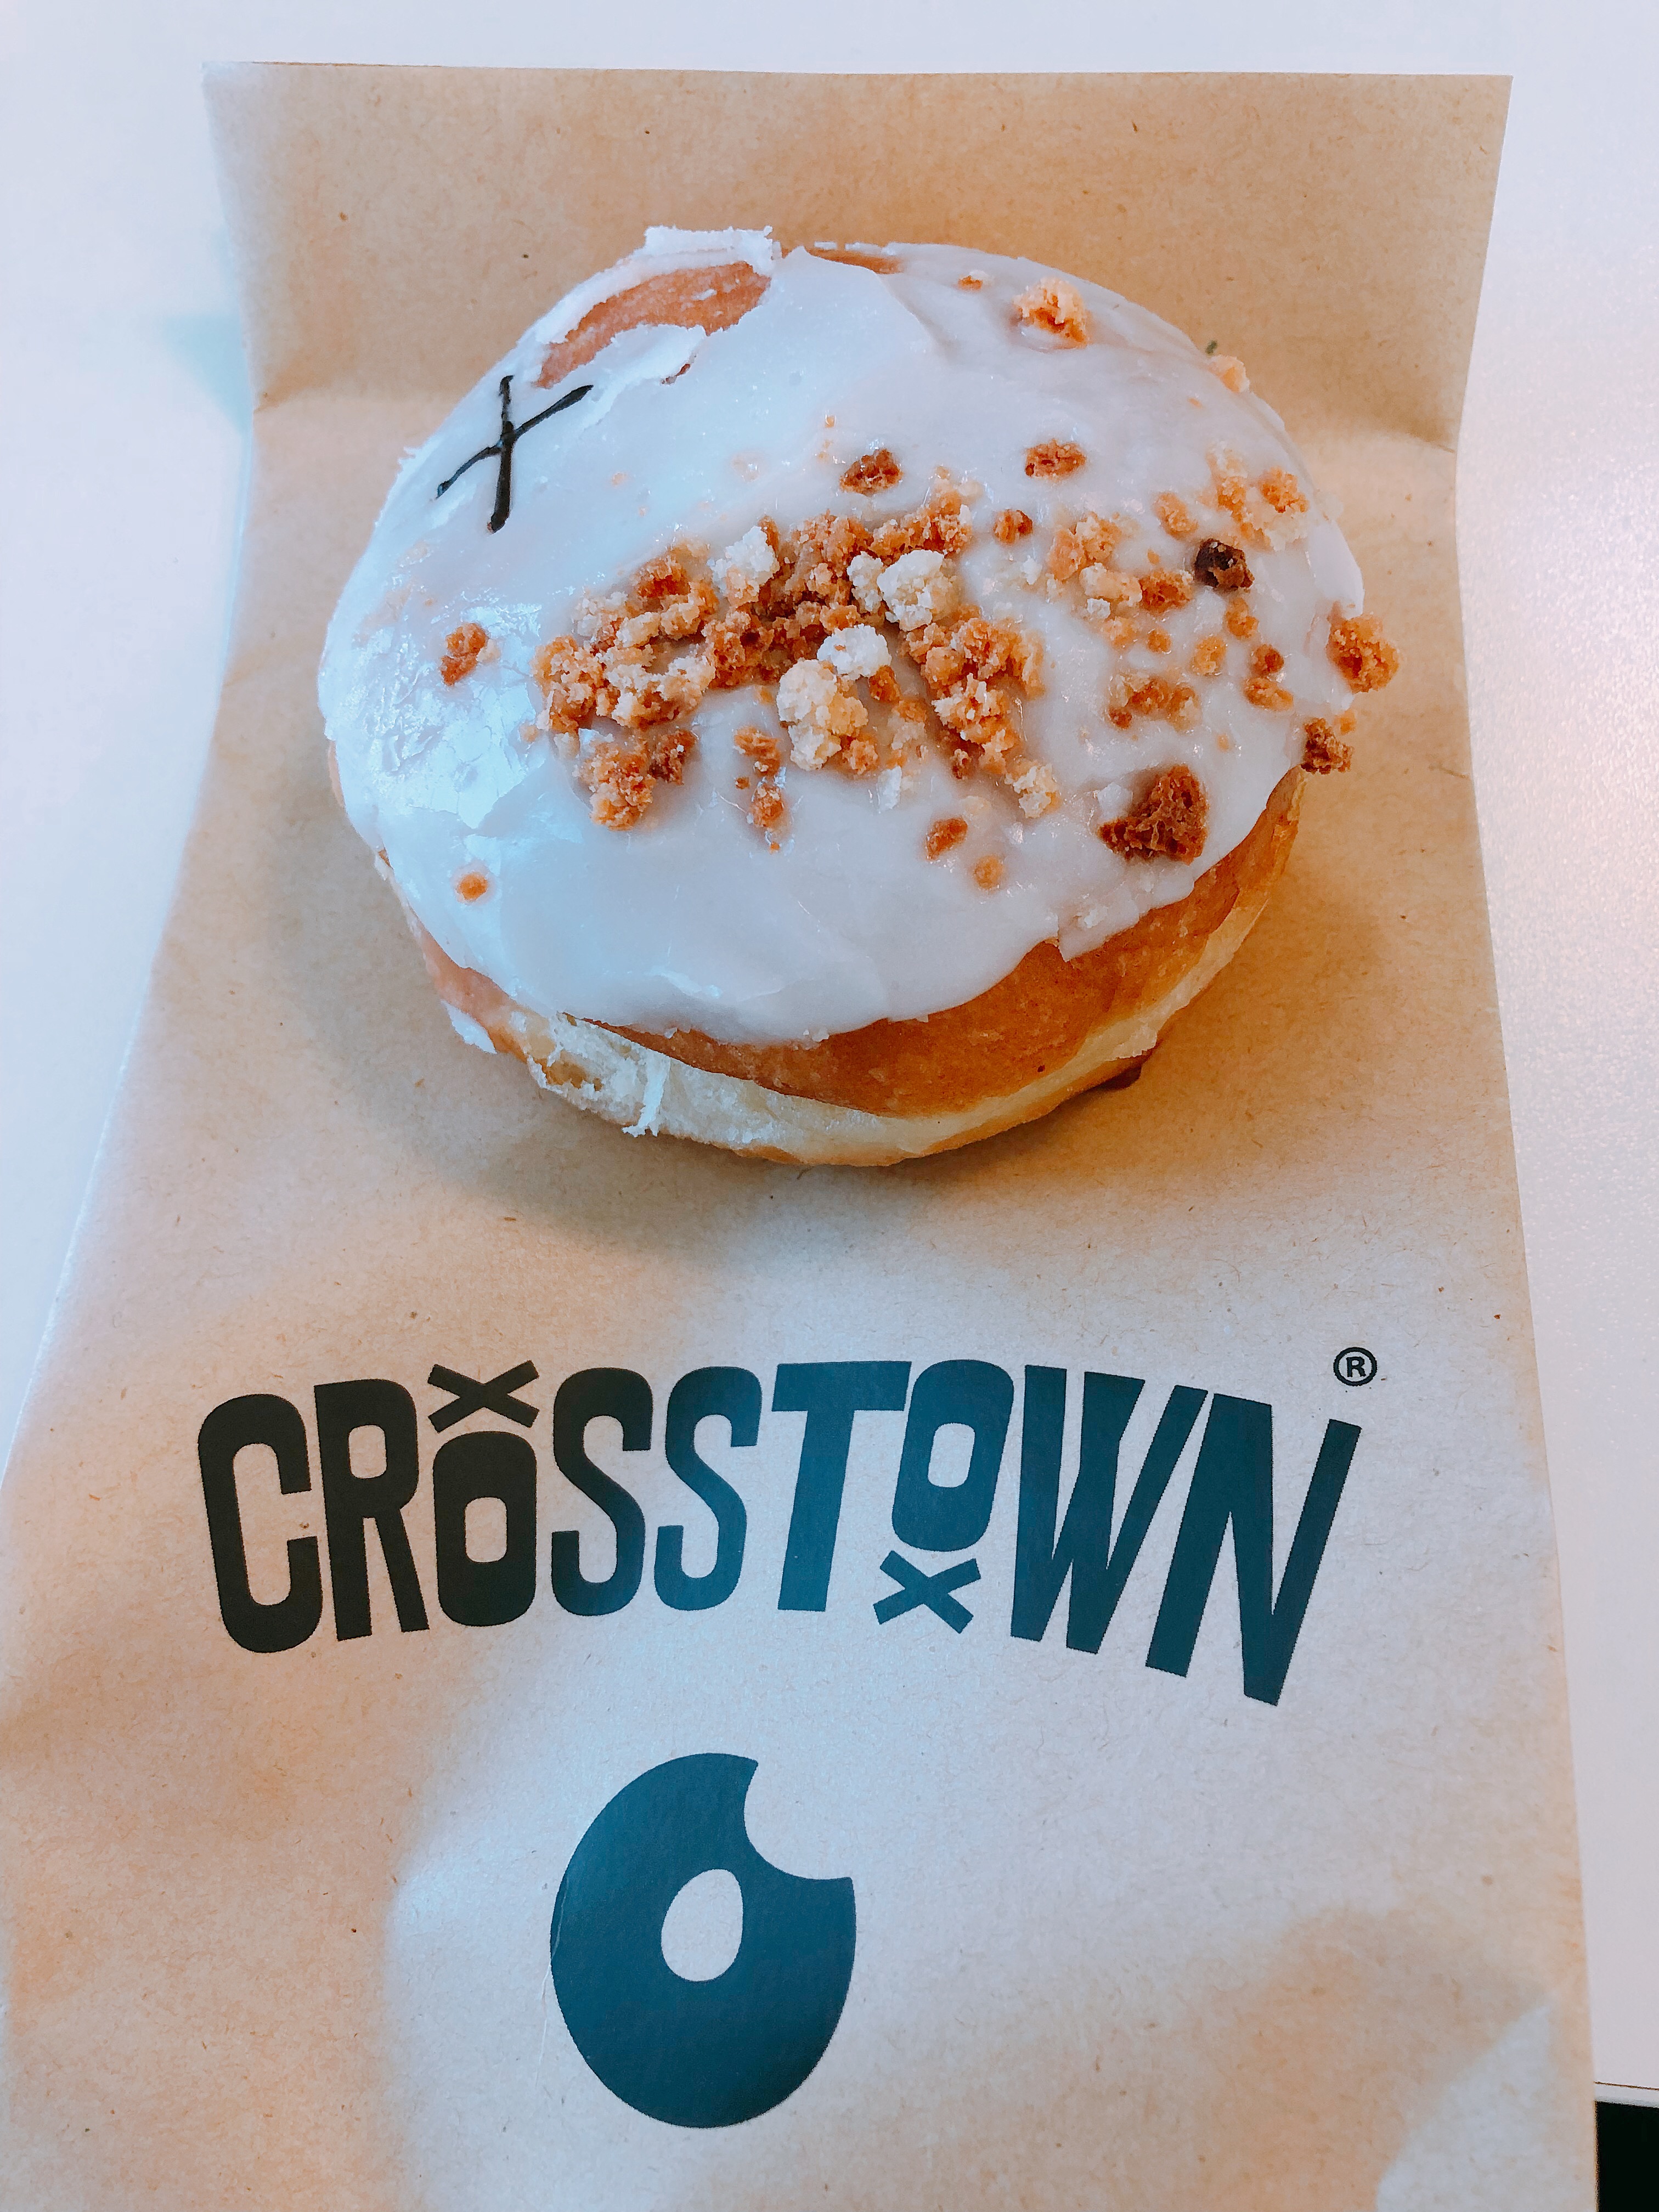 crosstown doughnut roasted peach